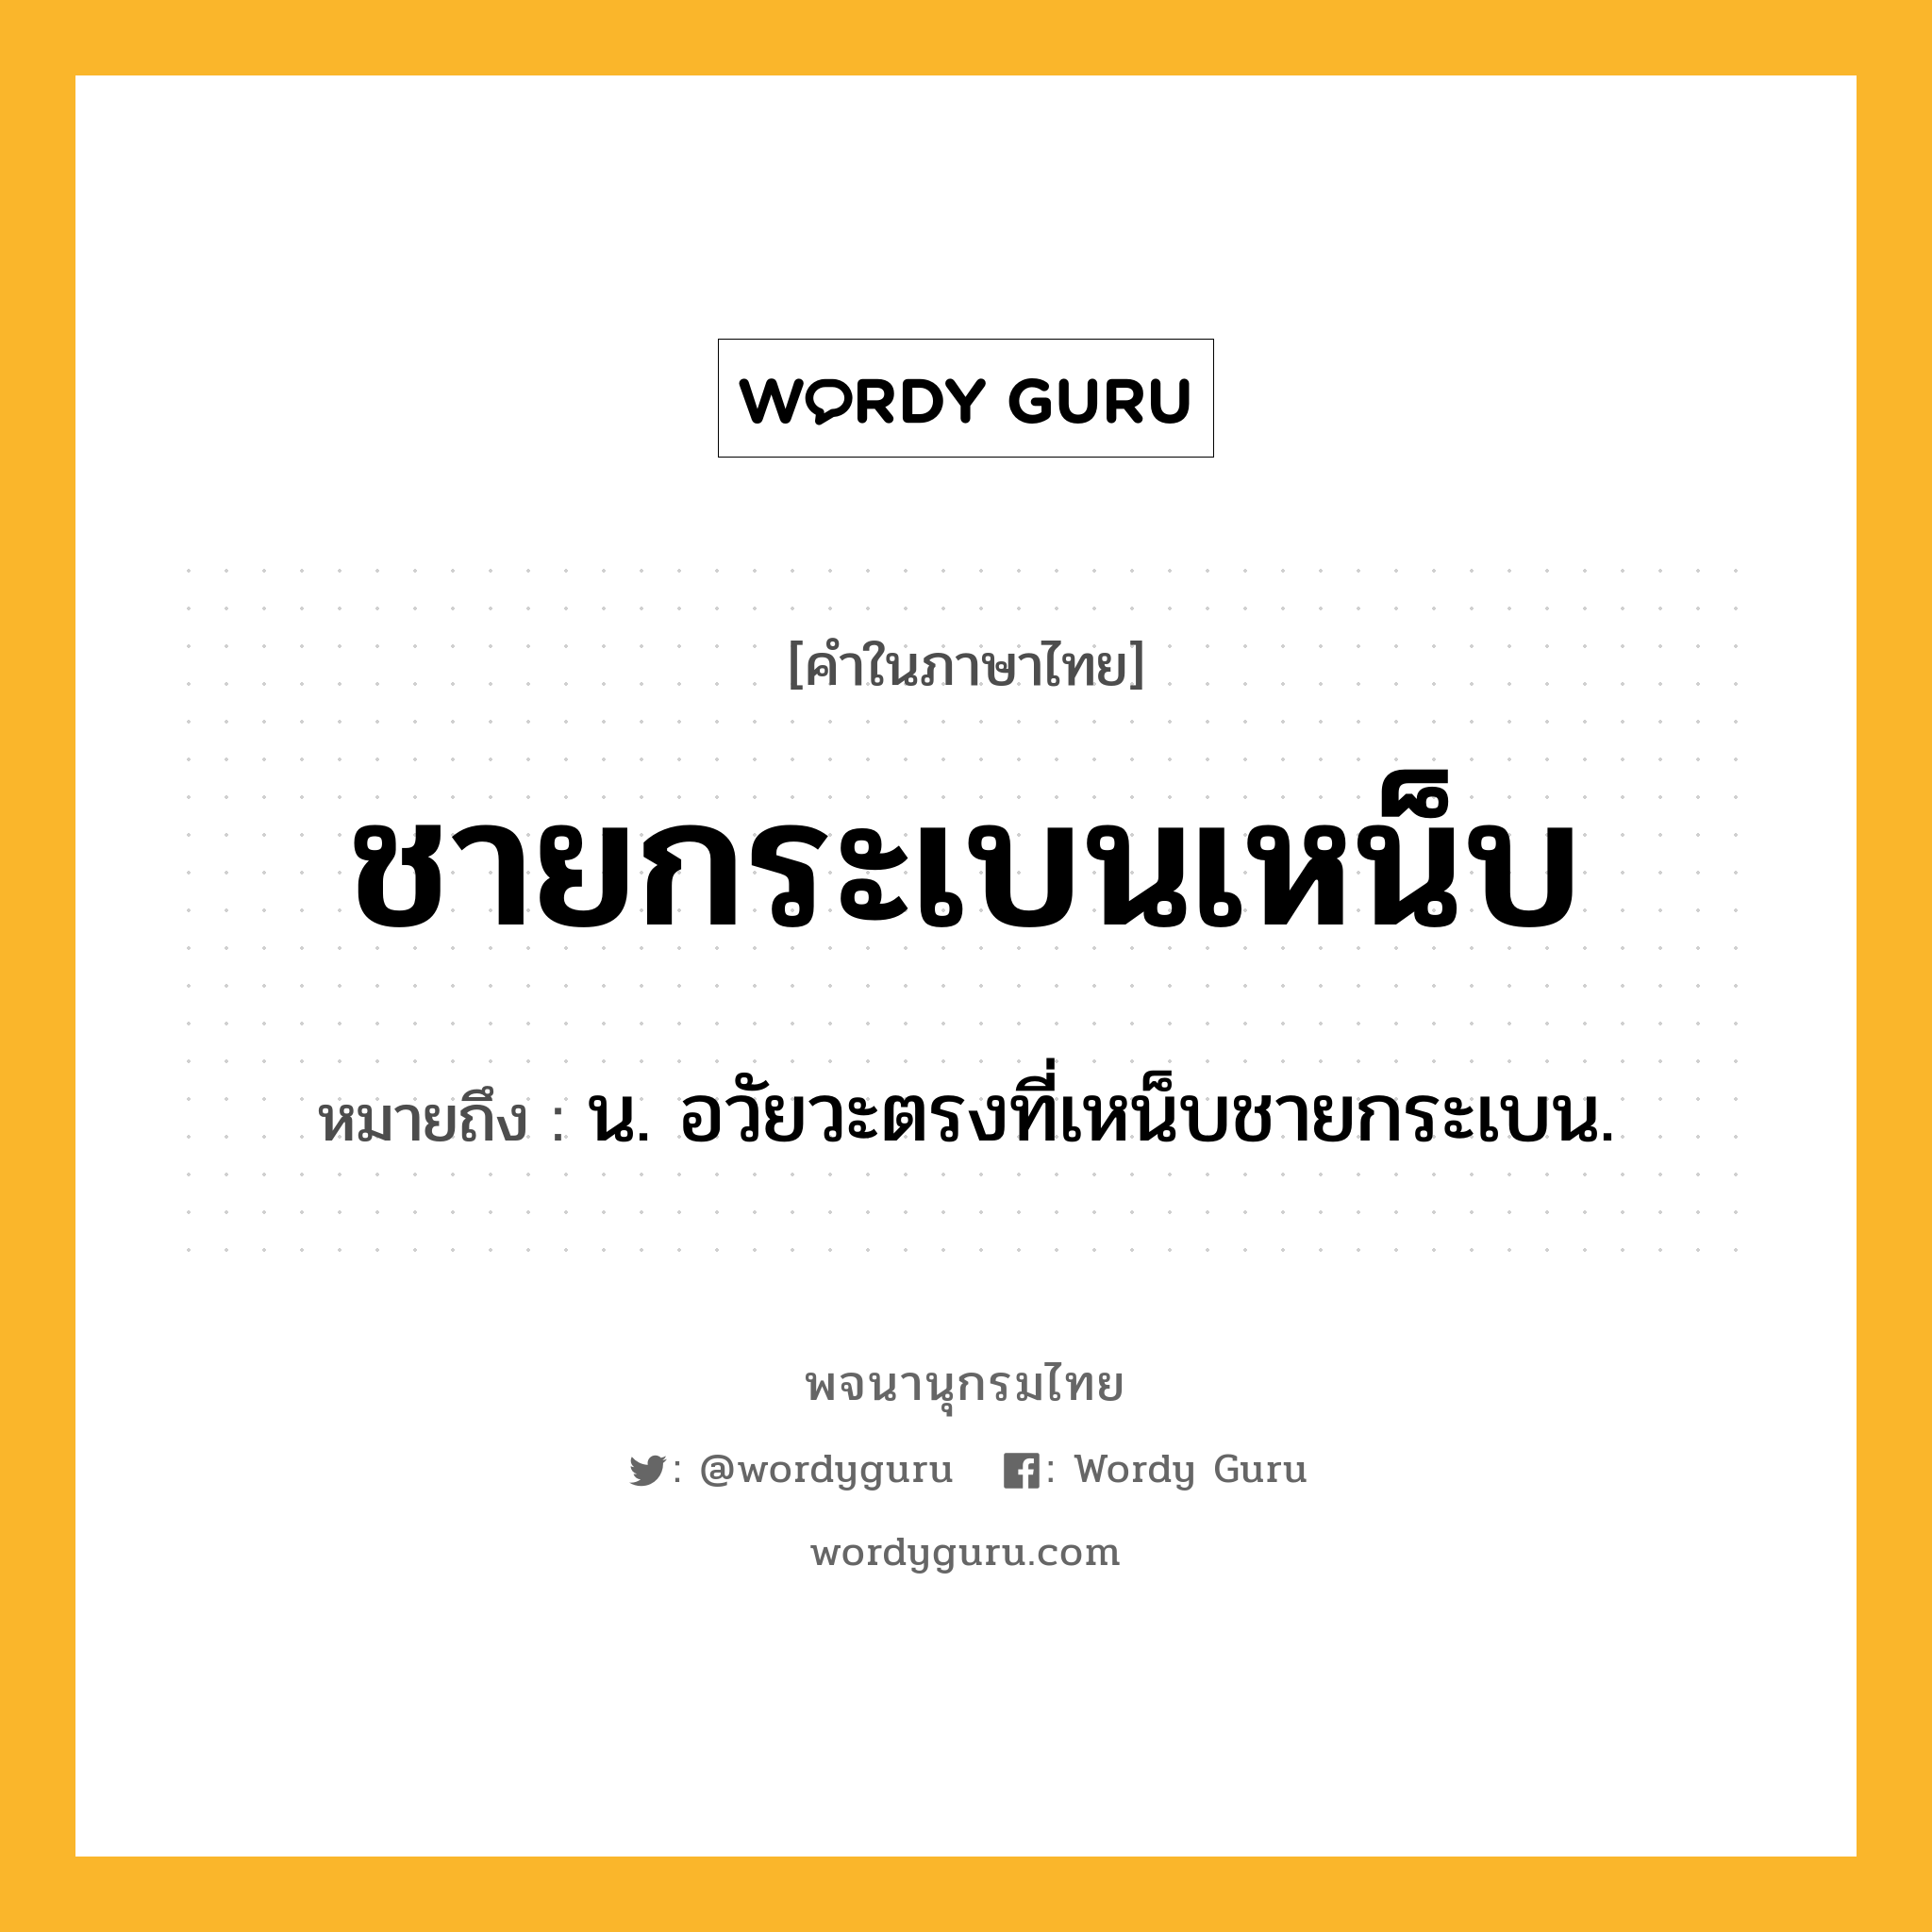 ชายกระเบนเหน็บ หมายถึงอะไร?, คำในภาษาไทย ชายกระเบนเหน็บ หมายถึง น. อวัยวะตรงที่เหน็บชายกระเบน.